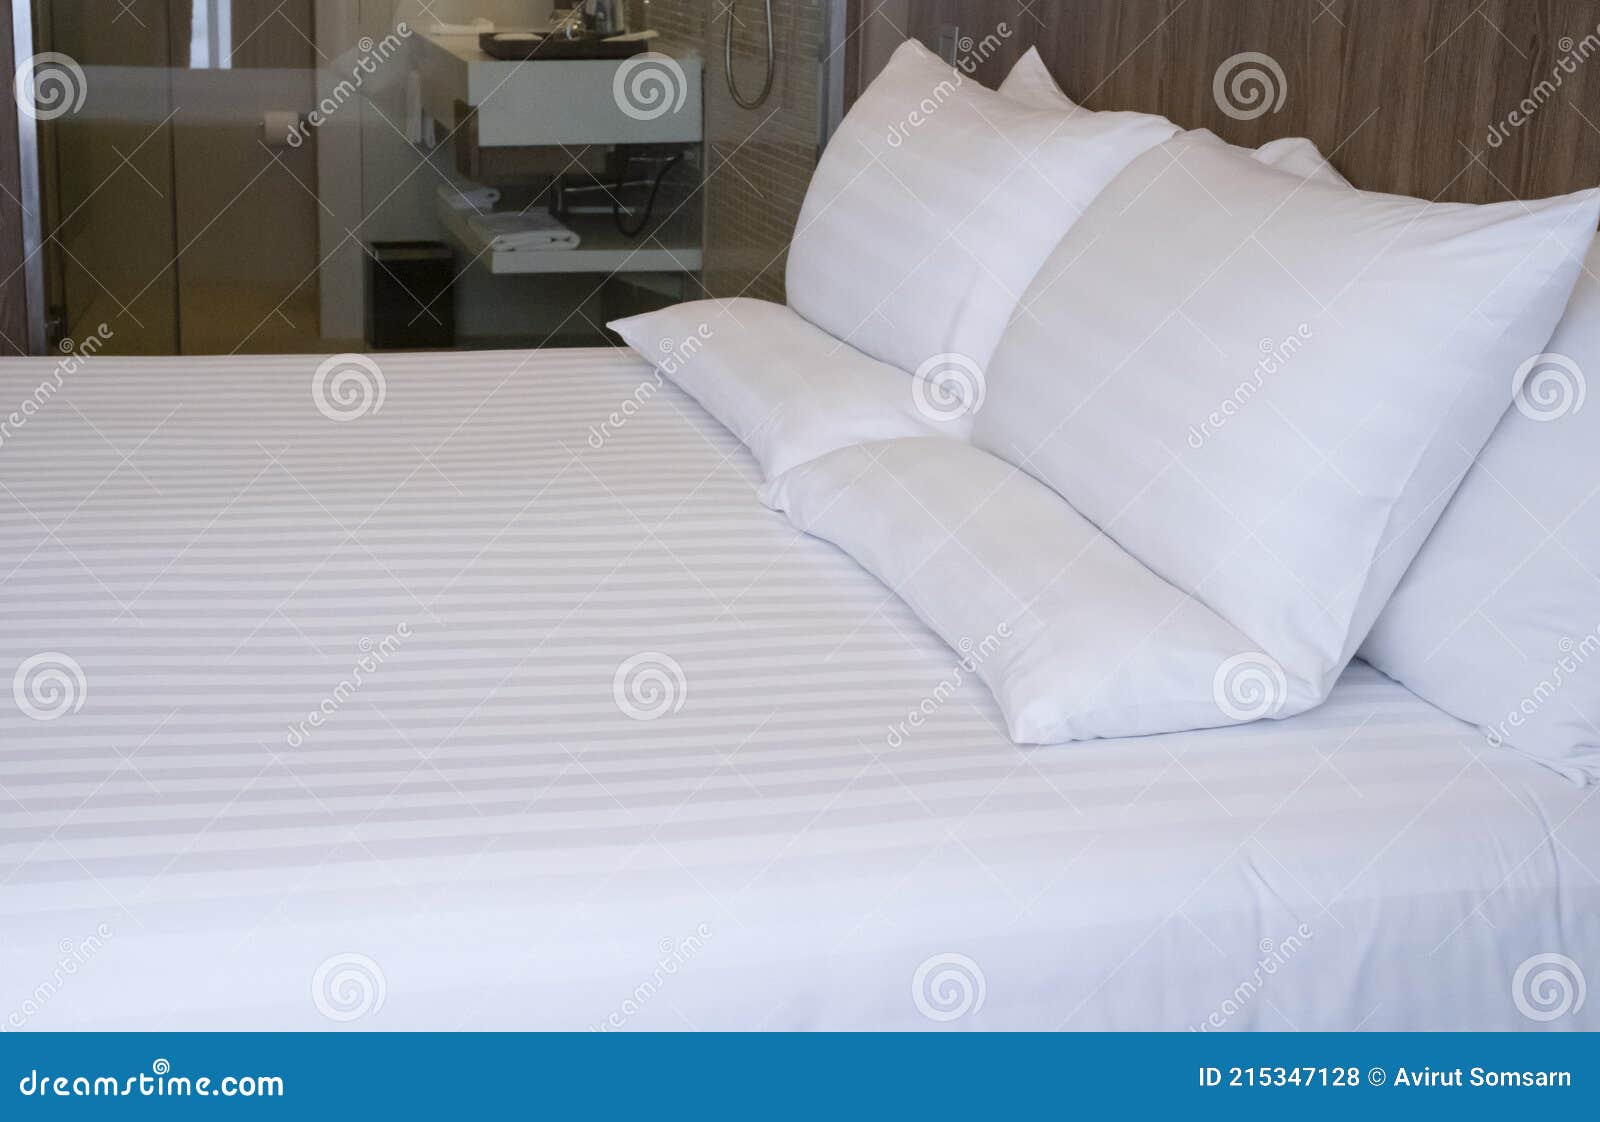 https://thumbs.dreamstime.com/z/cama-blanca-limpia-en-el-hotel-almohada-c%C3%B3moda-la-dormitorio-s%C3%A1banas-y-almohadas-habitaci%C3%B3n-de-grande-con-blancas-grandes-215347128.jpg